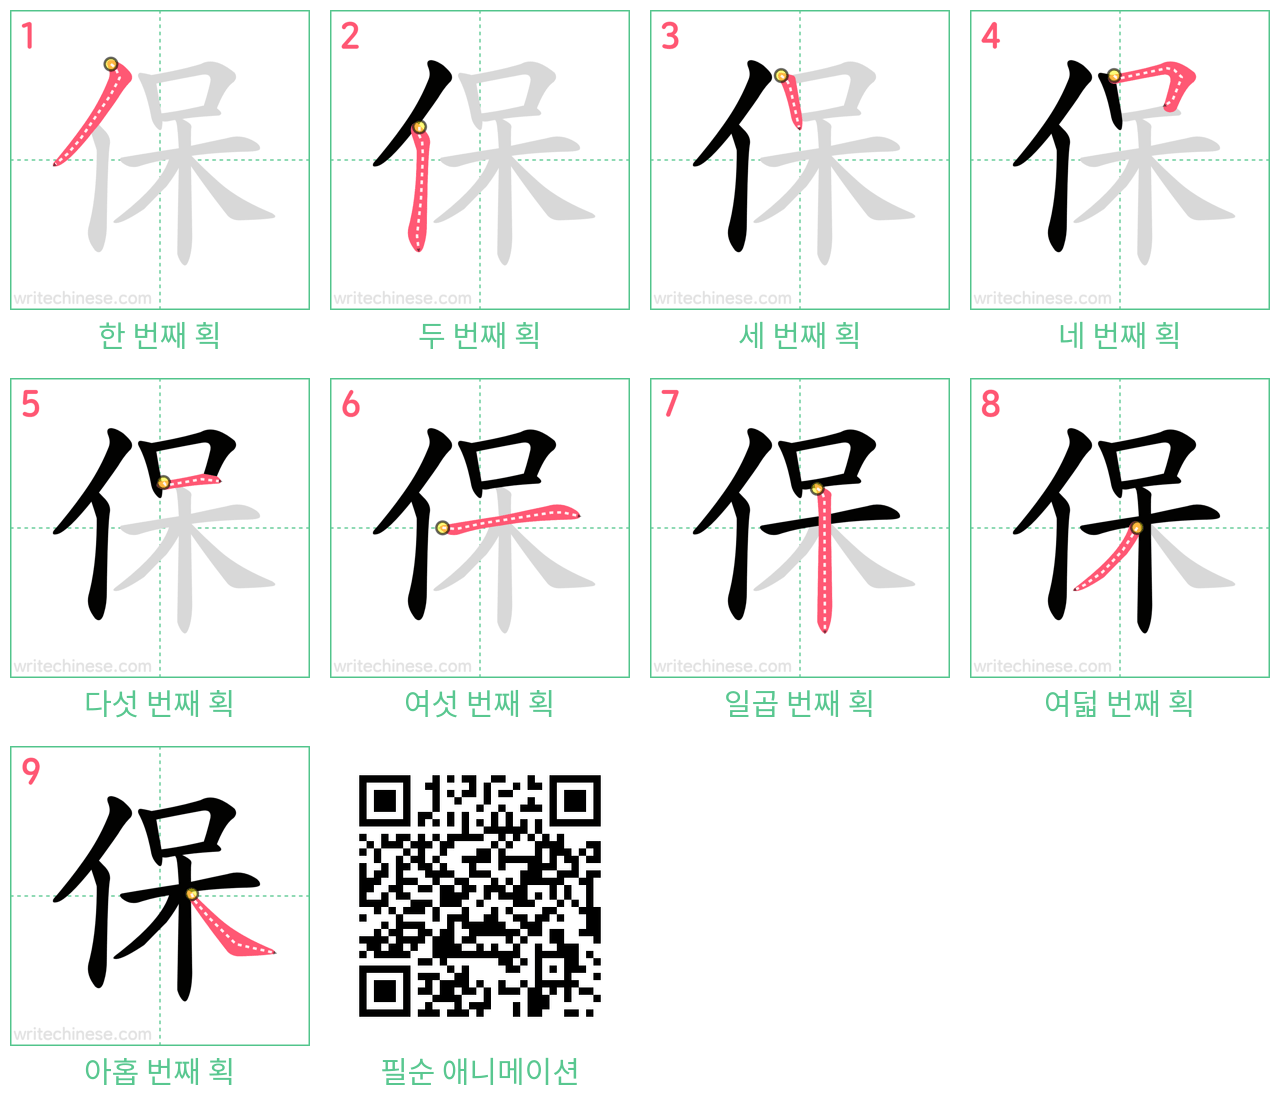 保 step-by-step stroke order diagrams